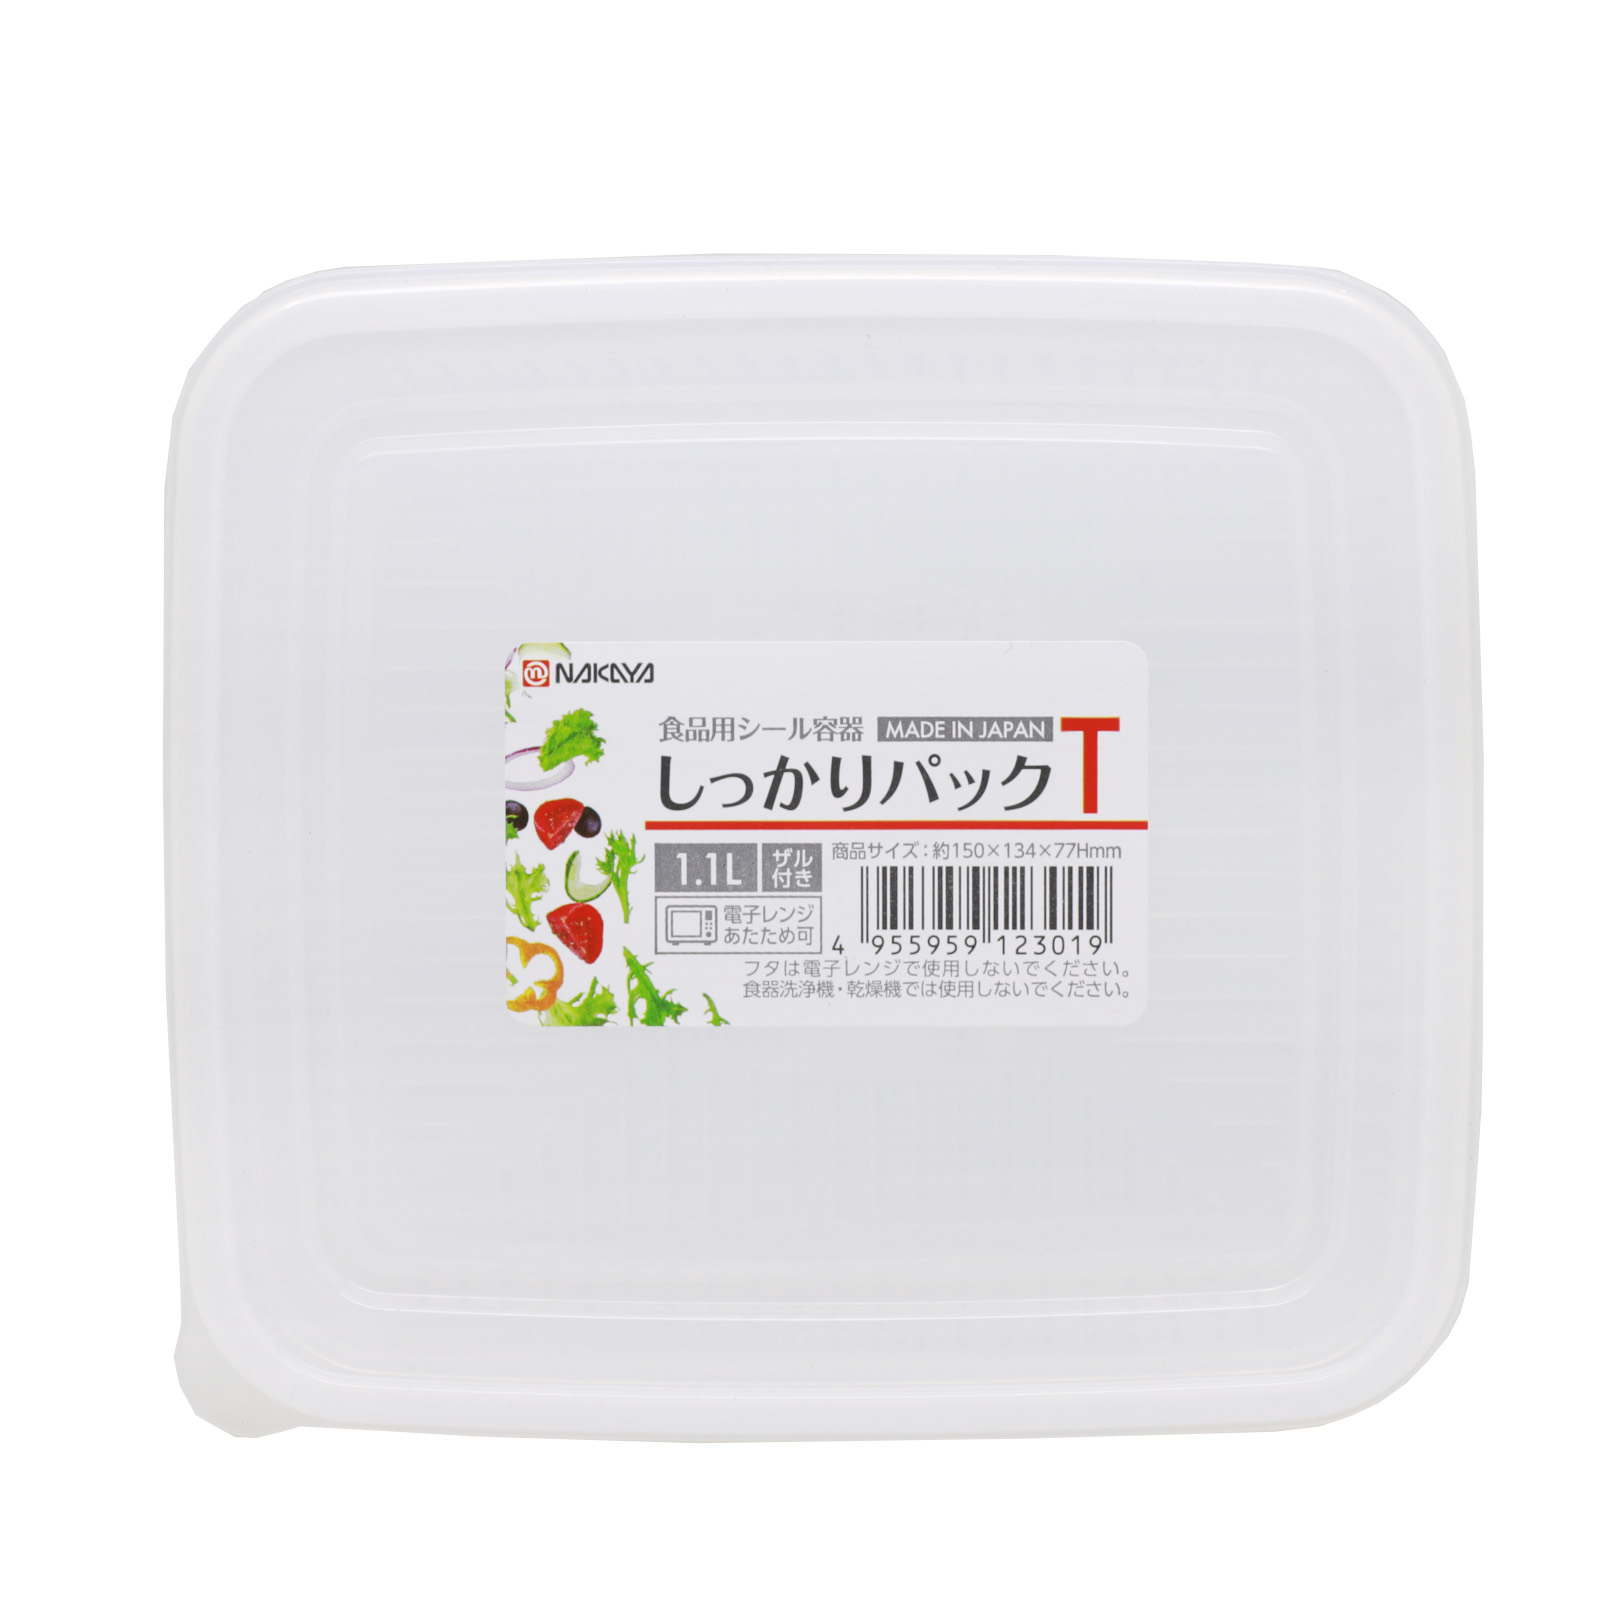 日本NAKAYA方型濾水萬用盒1.1L